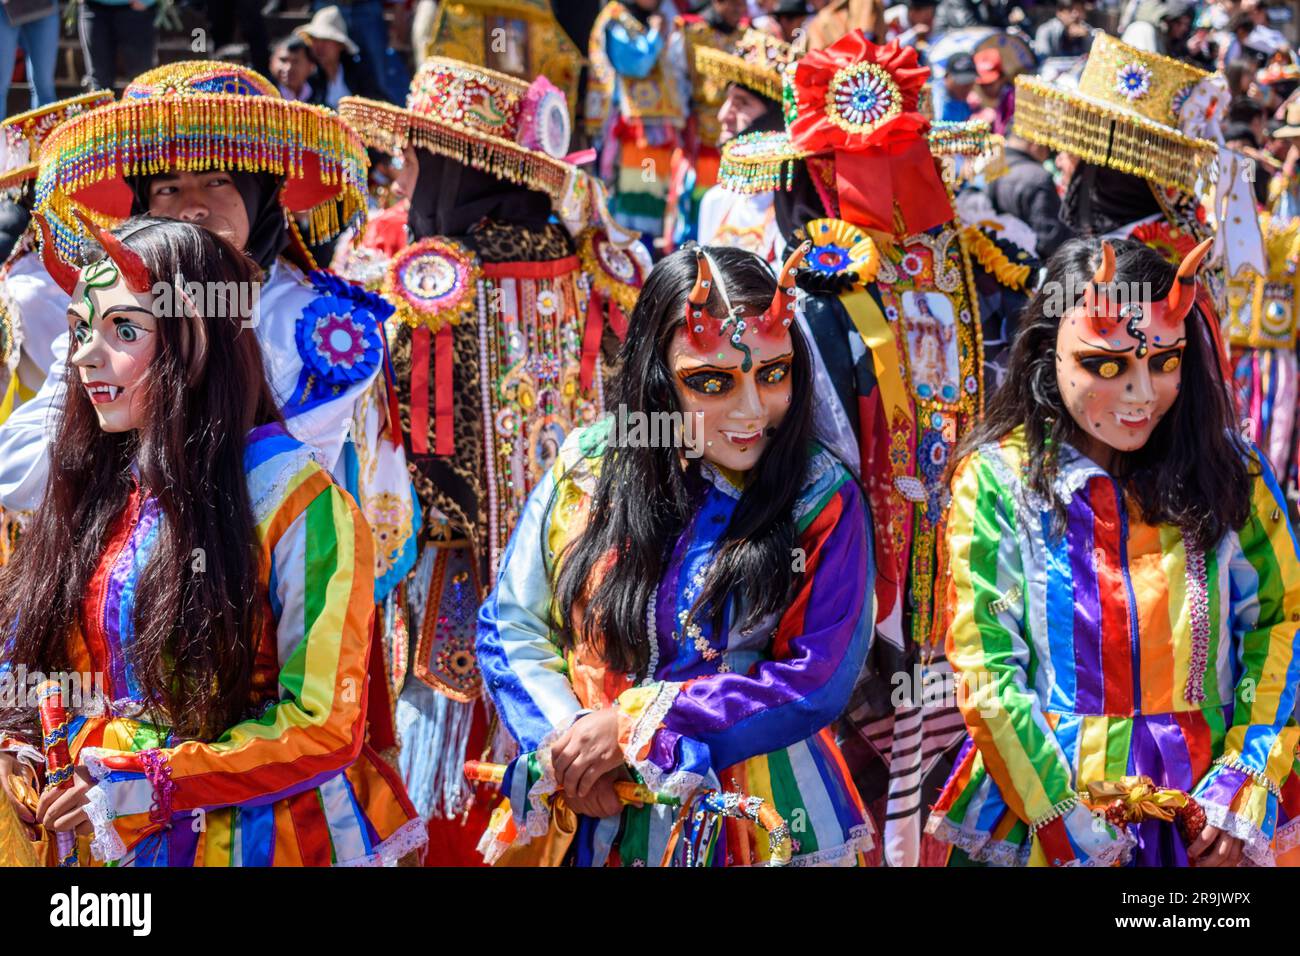 Cusco, une fête culturelle, des gens vêtus de costumes traditionnels colorés avec des masques et des chapeaux, des banderoles aux couleurs vives. Banque D'Images